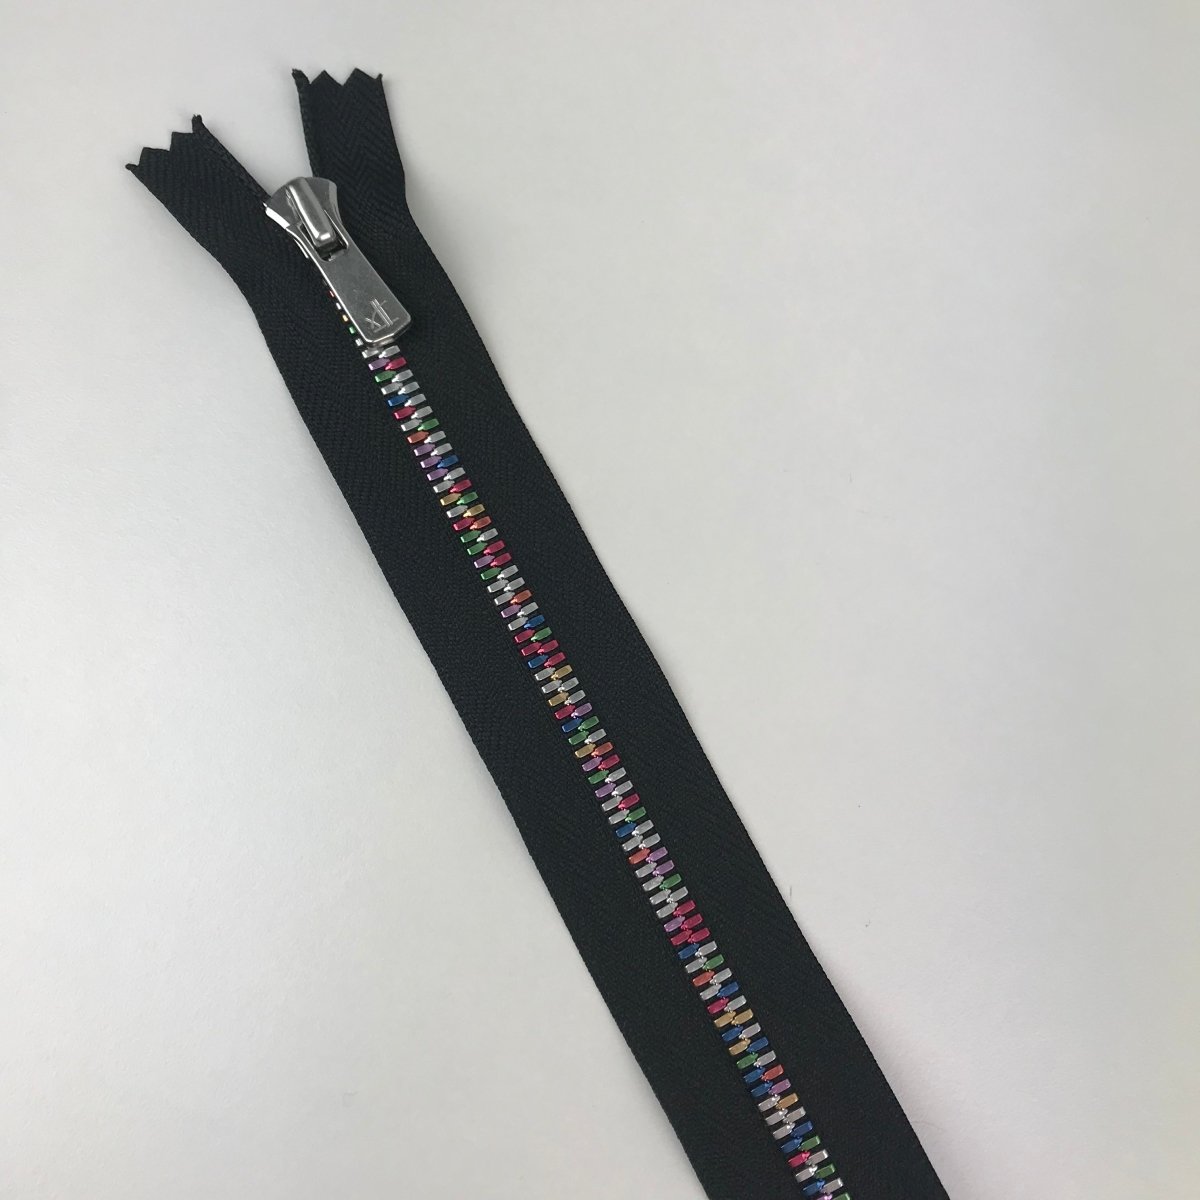 YKK Zipper - Exposed Metal Teeth - Rainbow - 91.5cm (36") - Sewing Gem